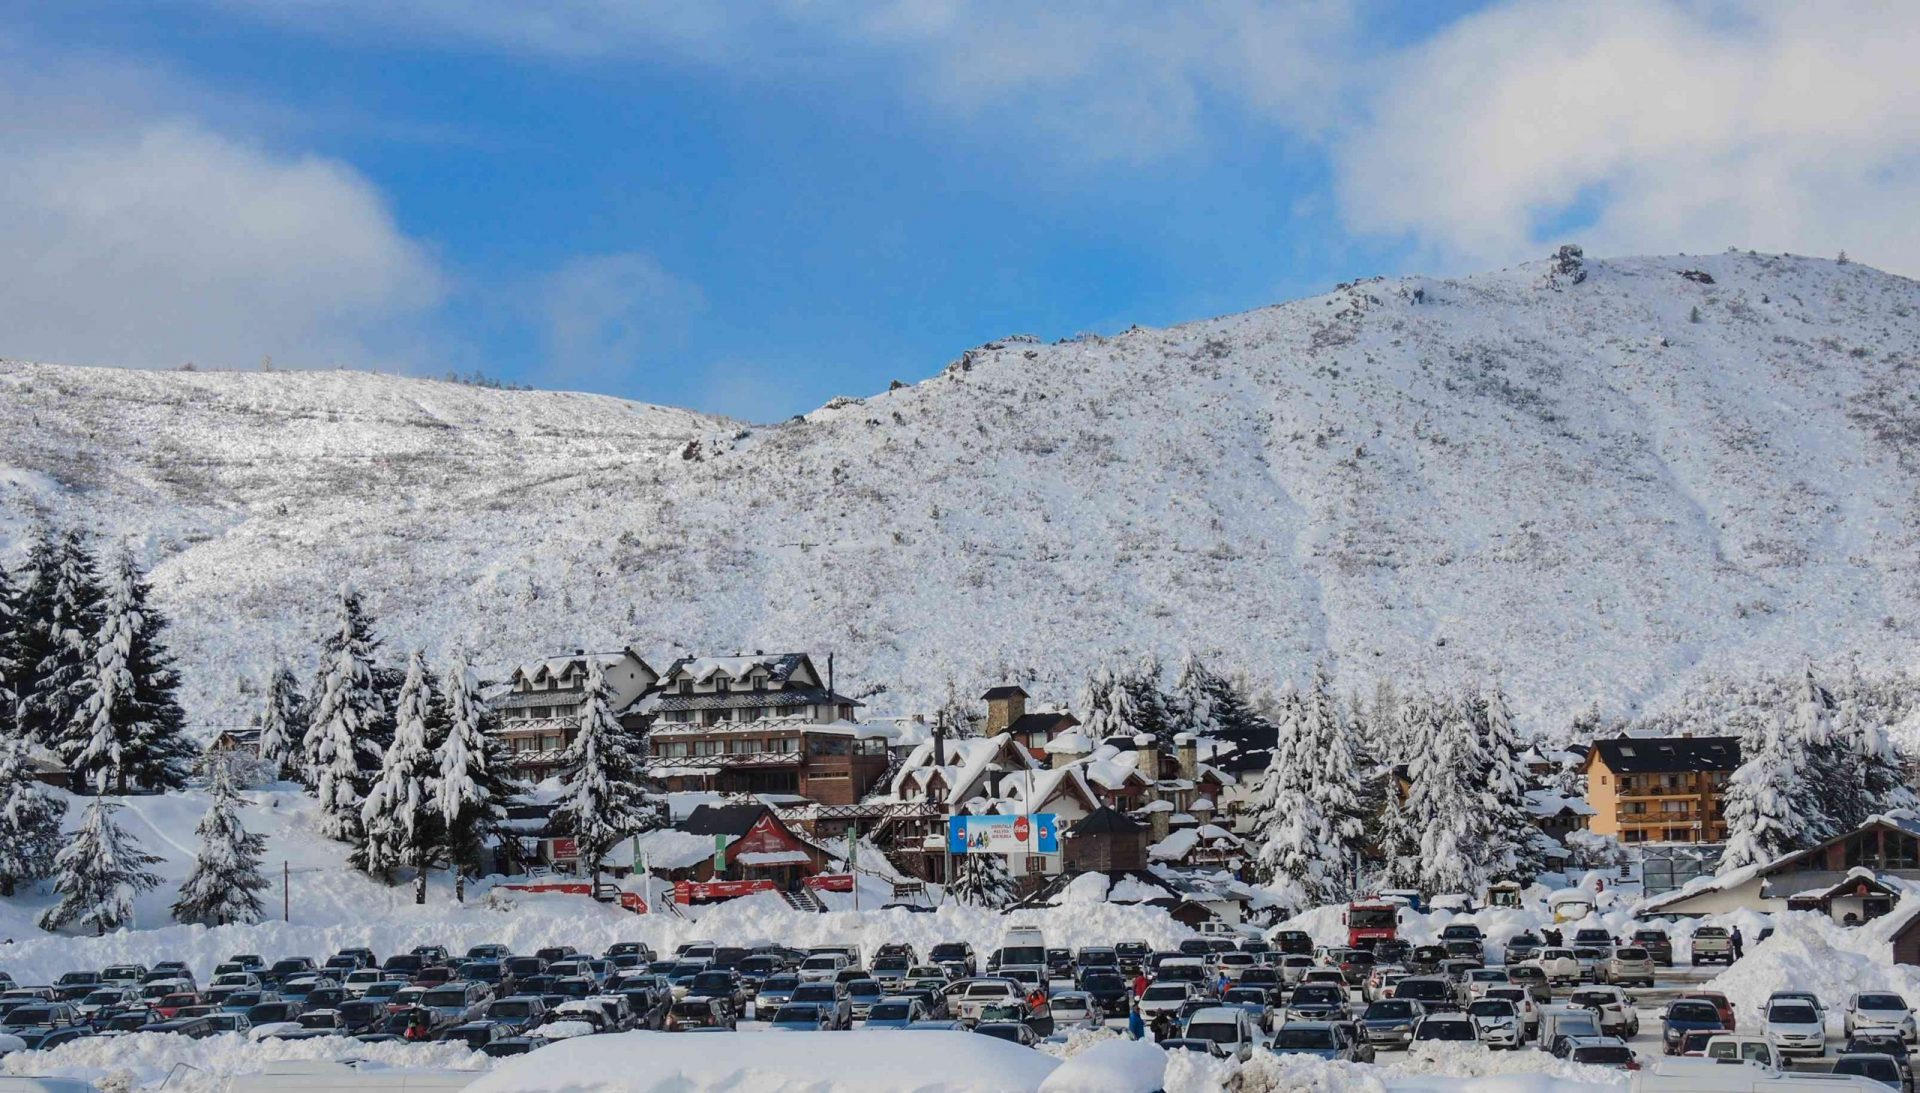 La estación de esquí de San Carlos de Bariloche después de una nevada, el pintoresco pueblo, los árboles de hoja perenne y la montaña en la distancia están cubiertos de nieve bajo un cielo azul lleno de nubes blancas